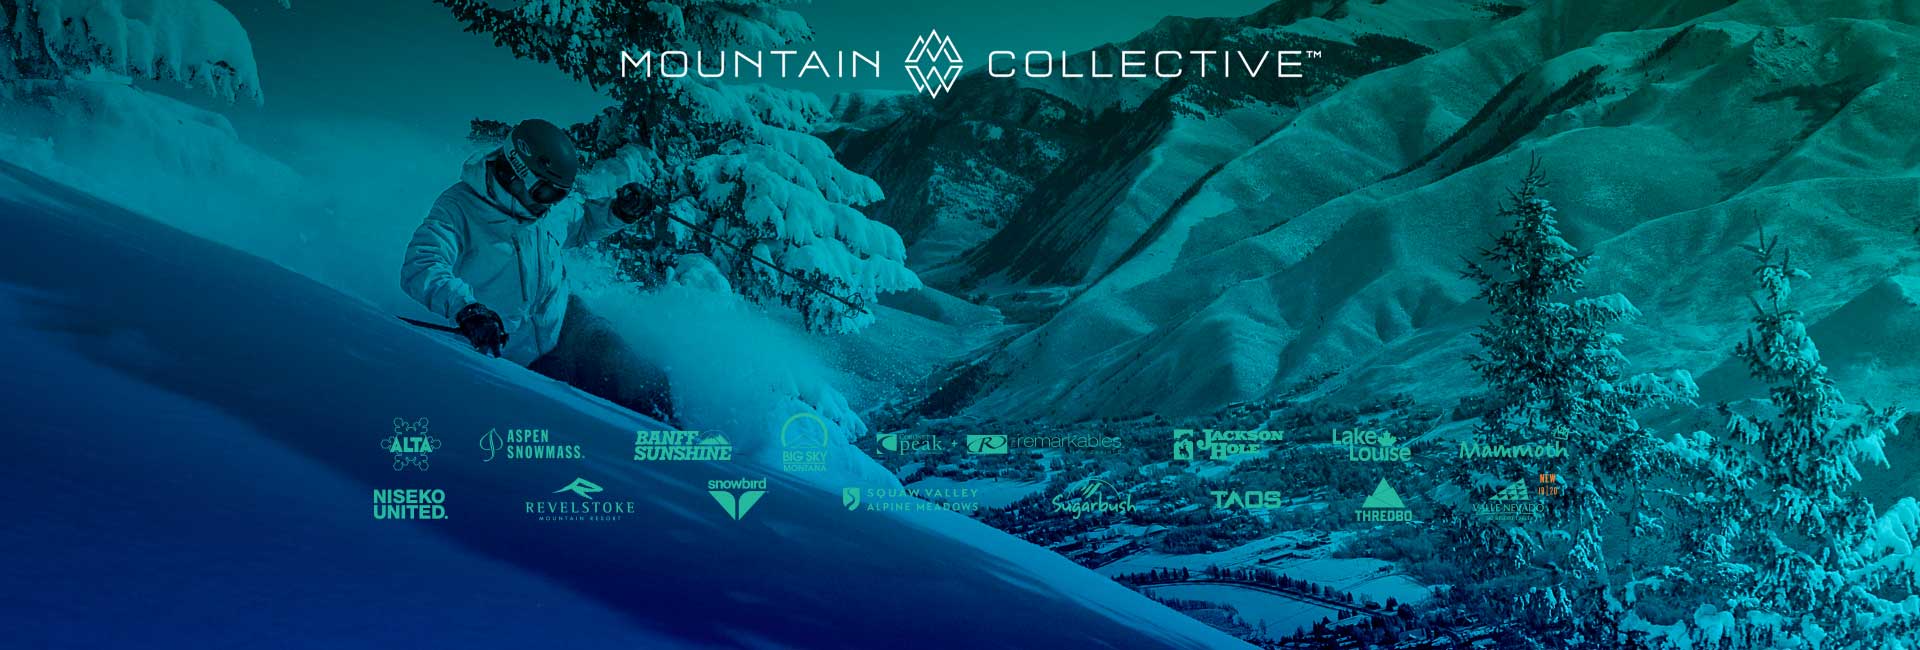 The Mountain Collective